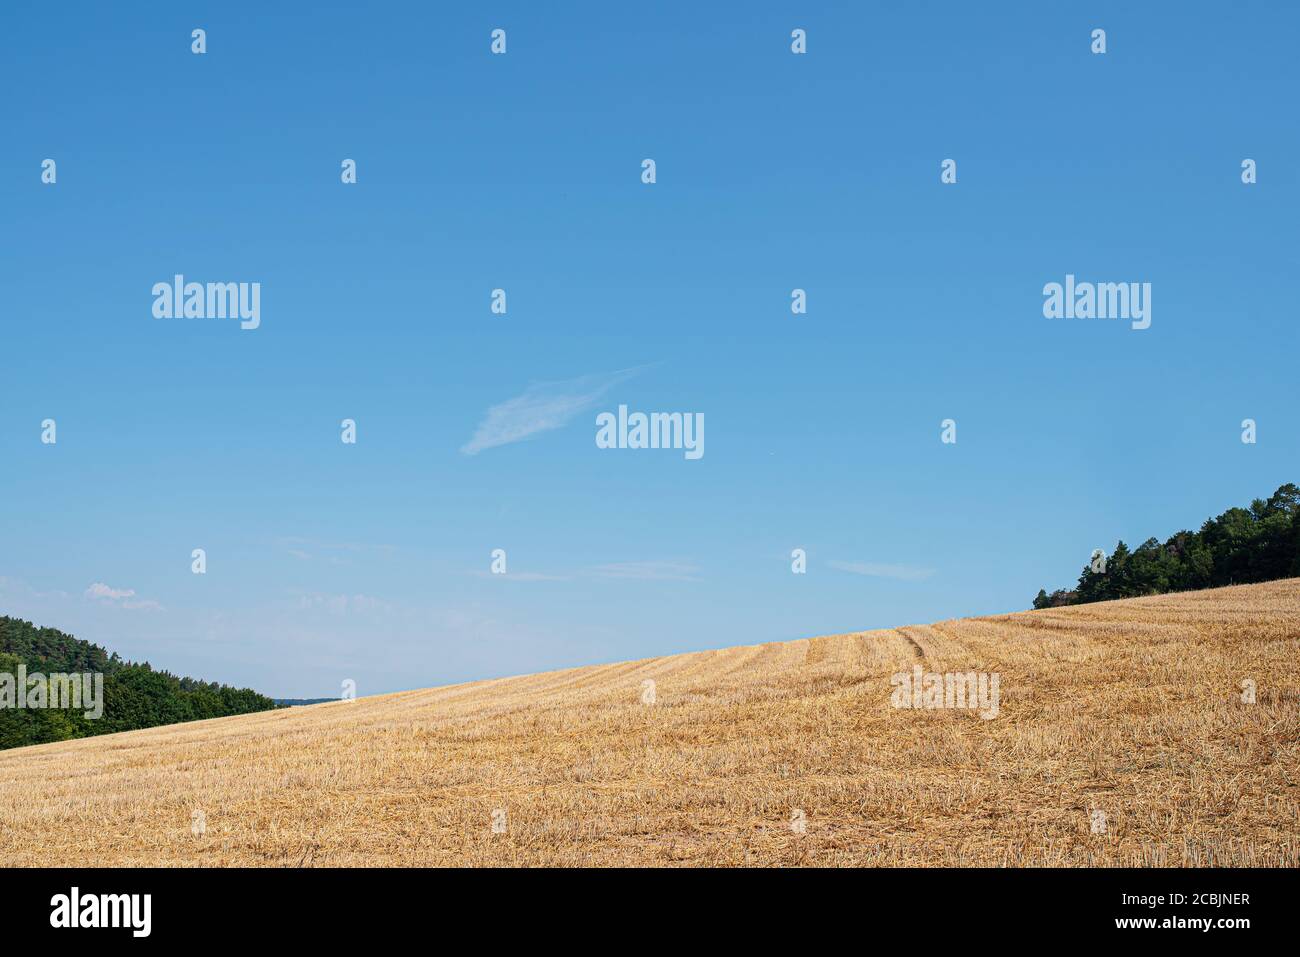 récolte de champ de blé dans un paysage vallonné contre ciel bleu clair d'été Banque D'Images